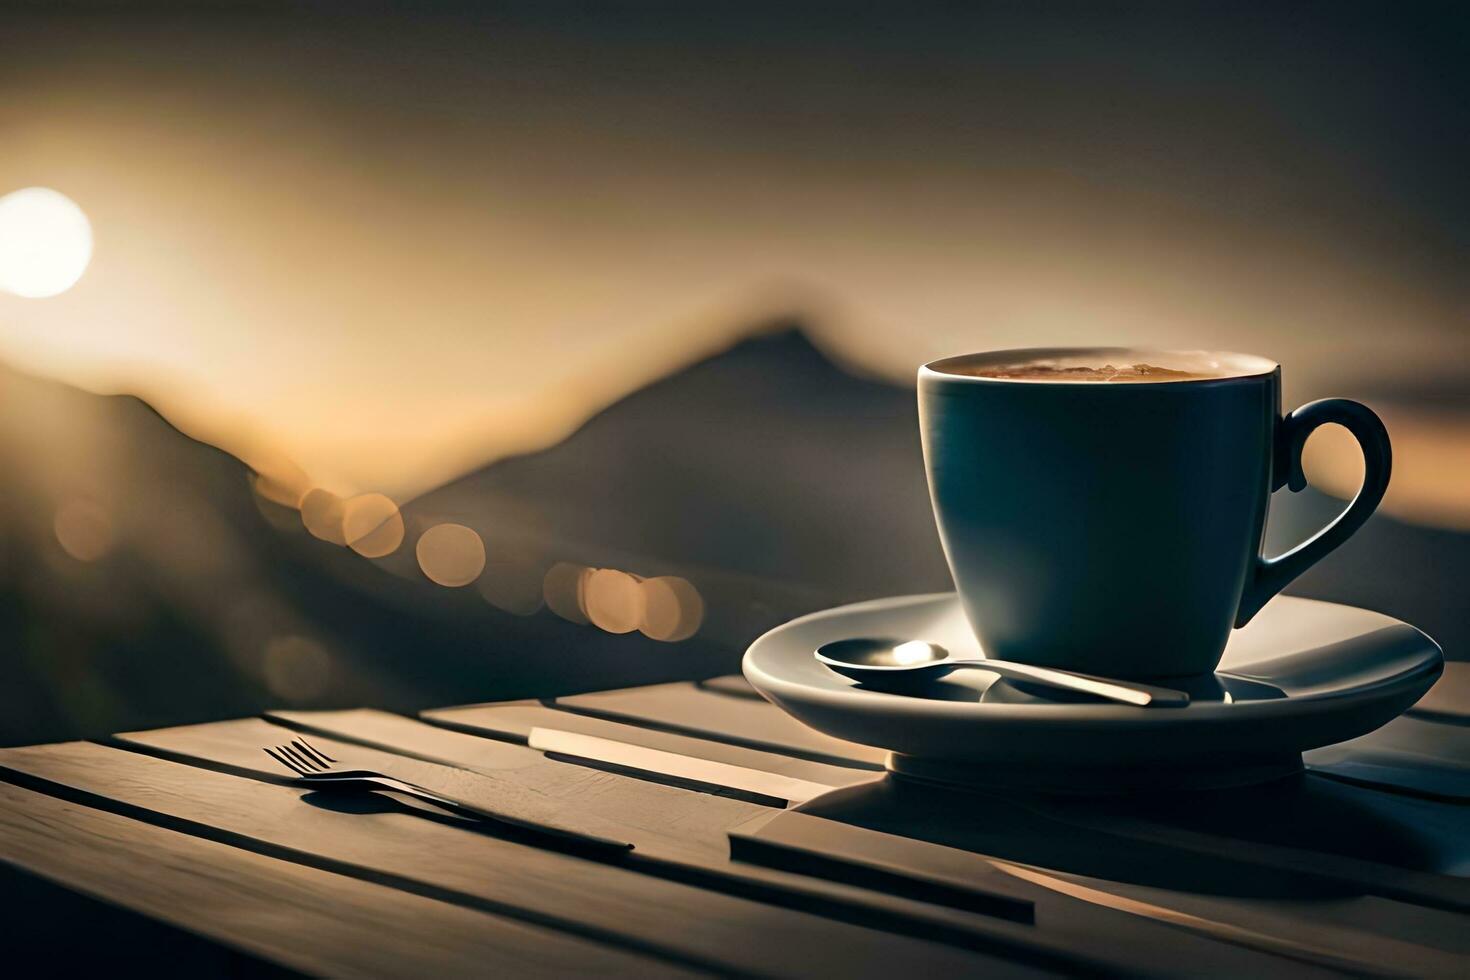 Kaffee Tasse auf Tabelle mit Berge im Hintergrund. KI-generiert foto